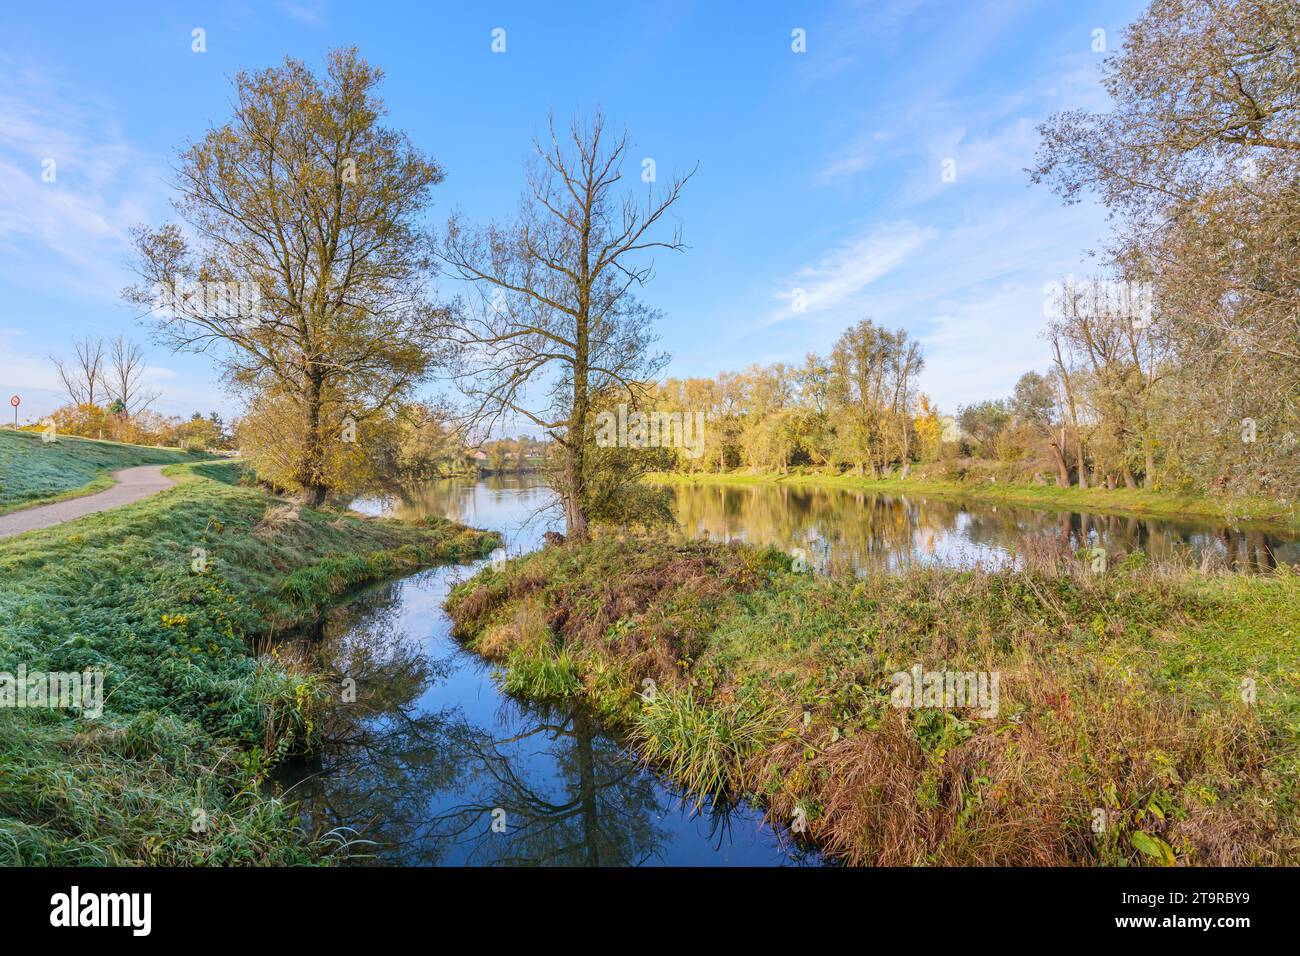 Ruscello che scorre nel fiume, alberi autunnali sullo sfondo del cielo blu, riflesso specchio sulla superficie dell'acqua, riserva naturale belga De Wissen Maasvalle Foto Stock